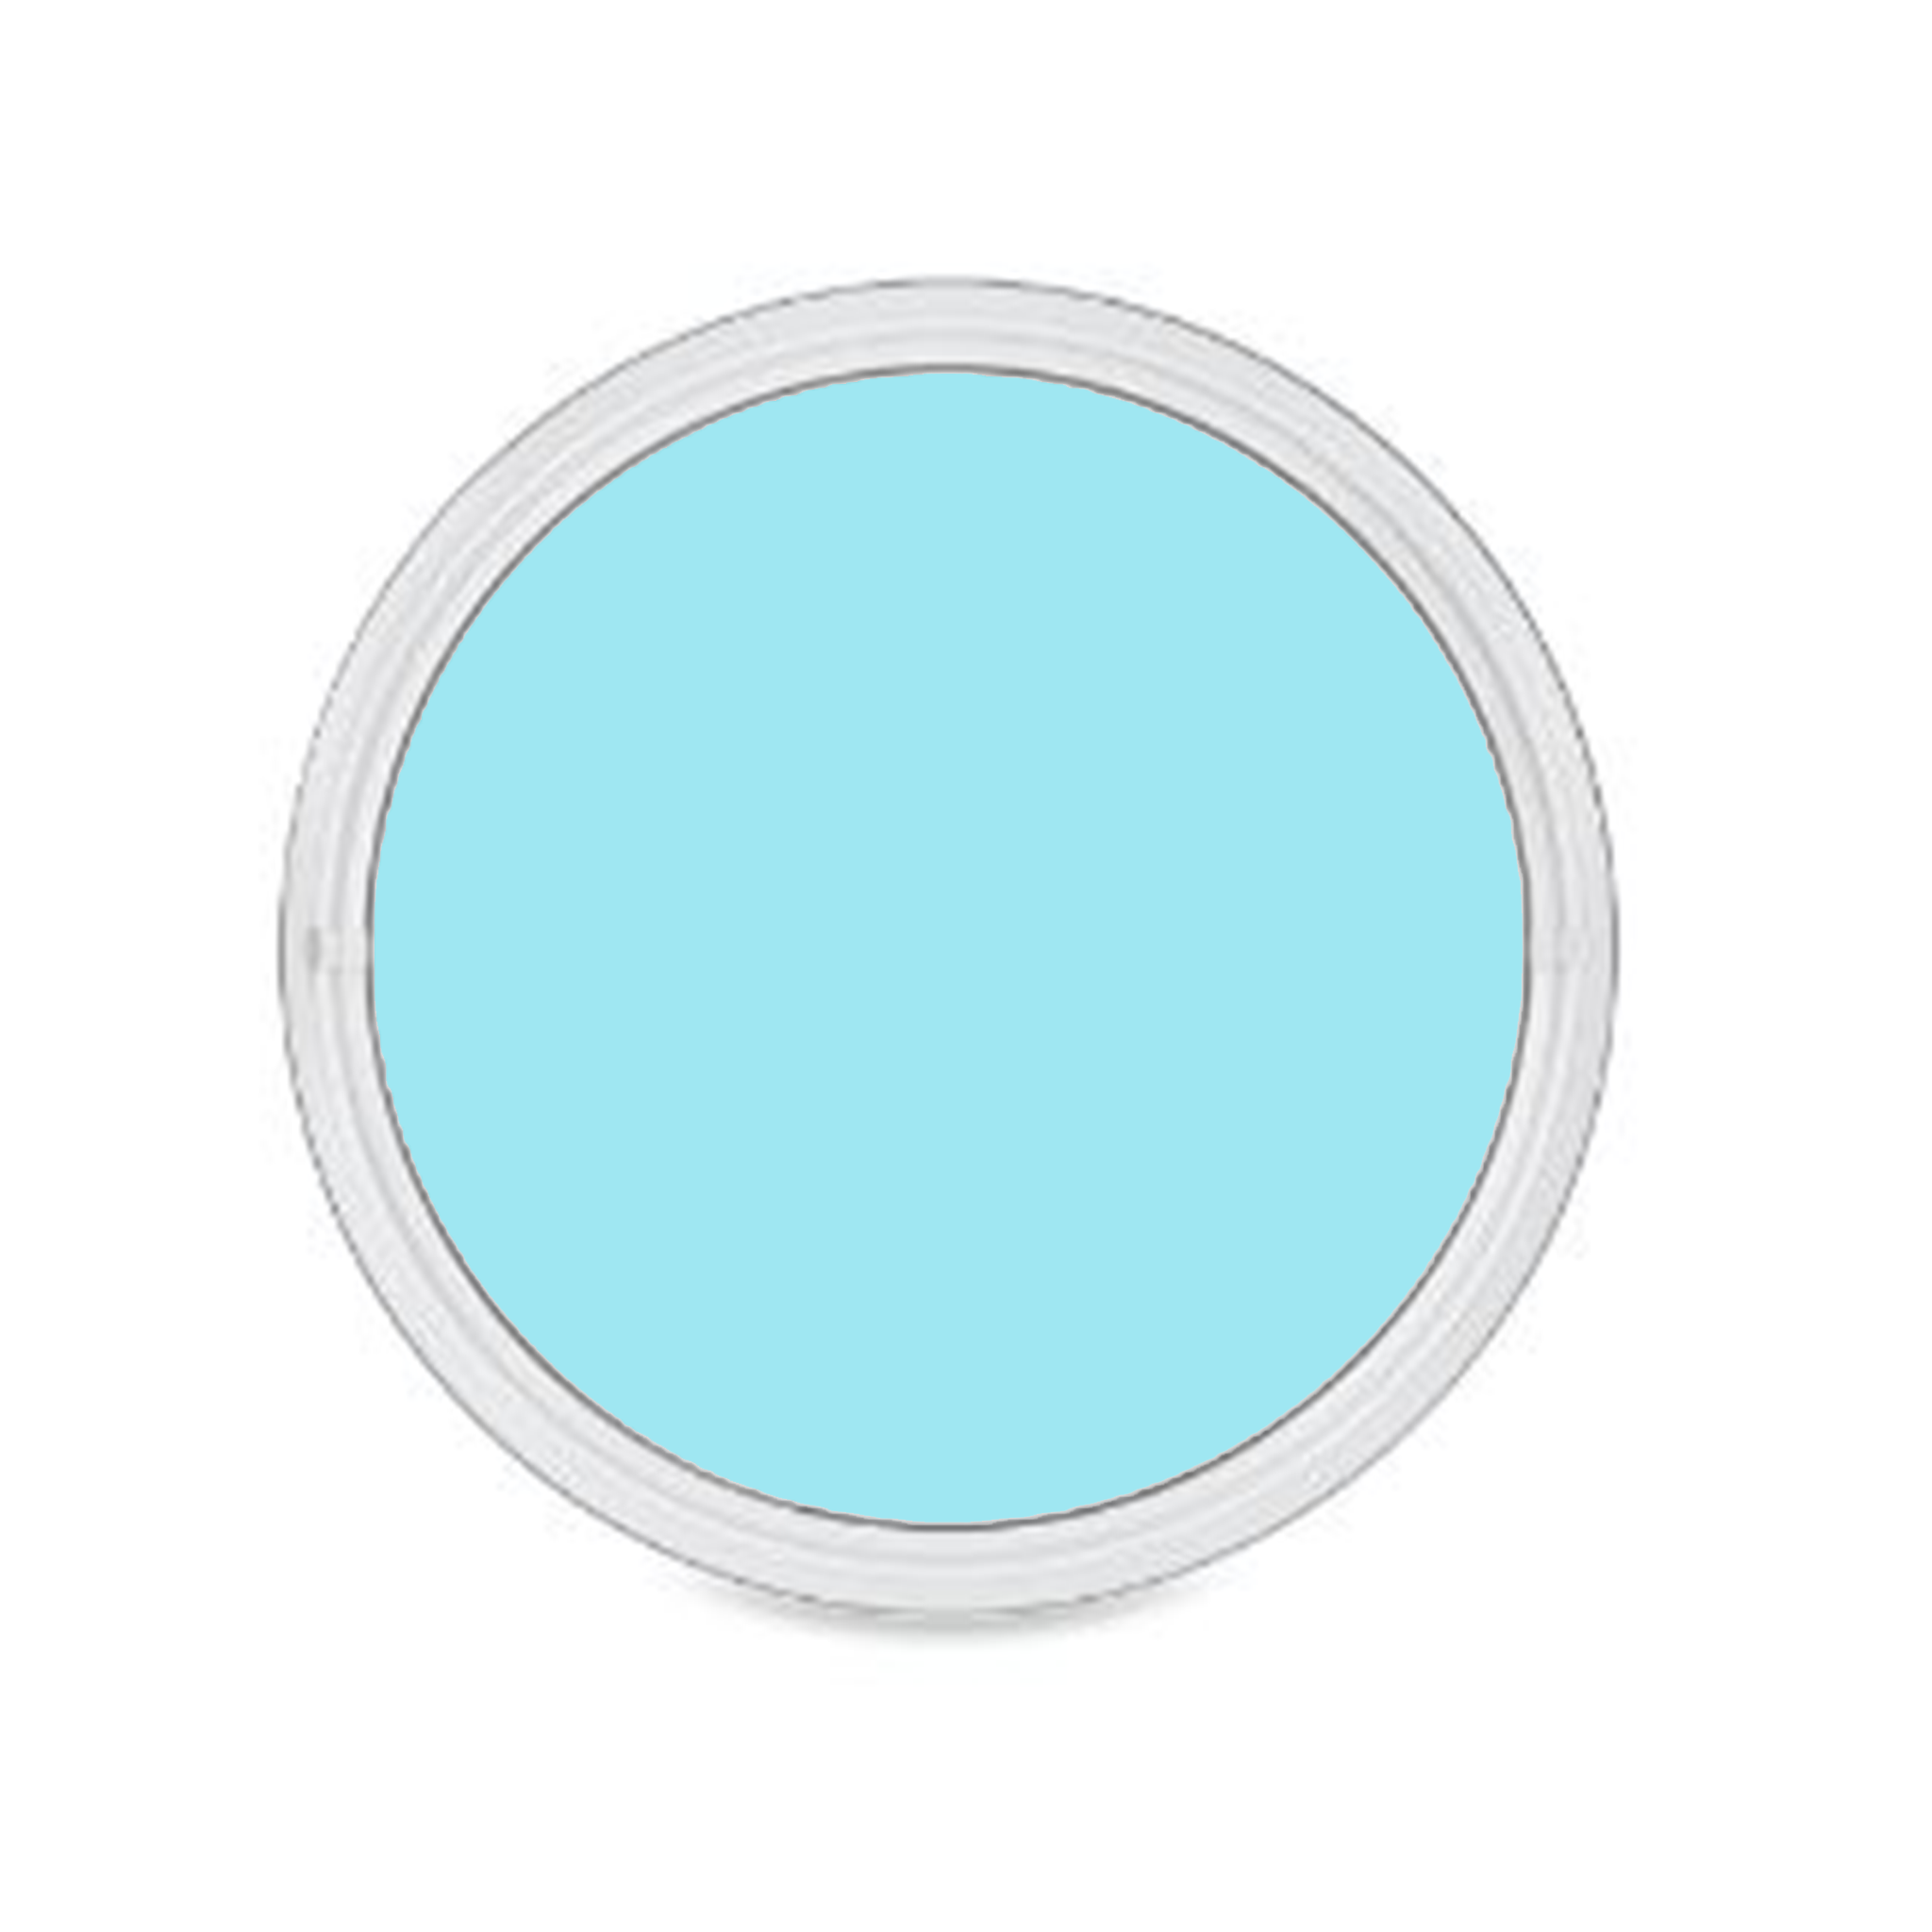 CIRCLE ROUND Image